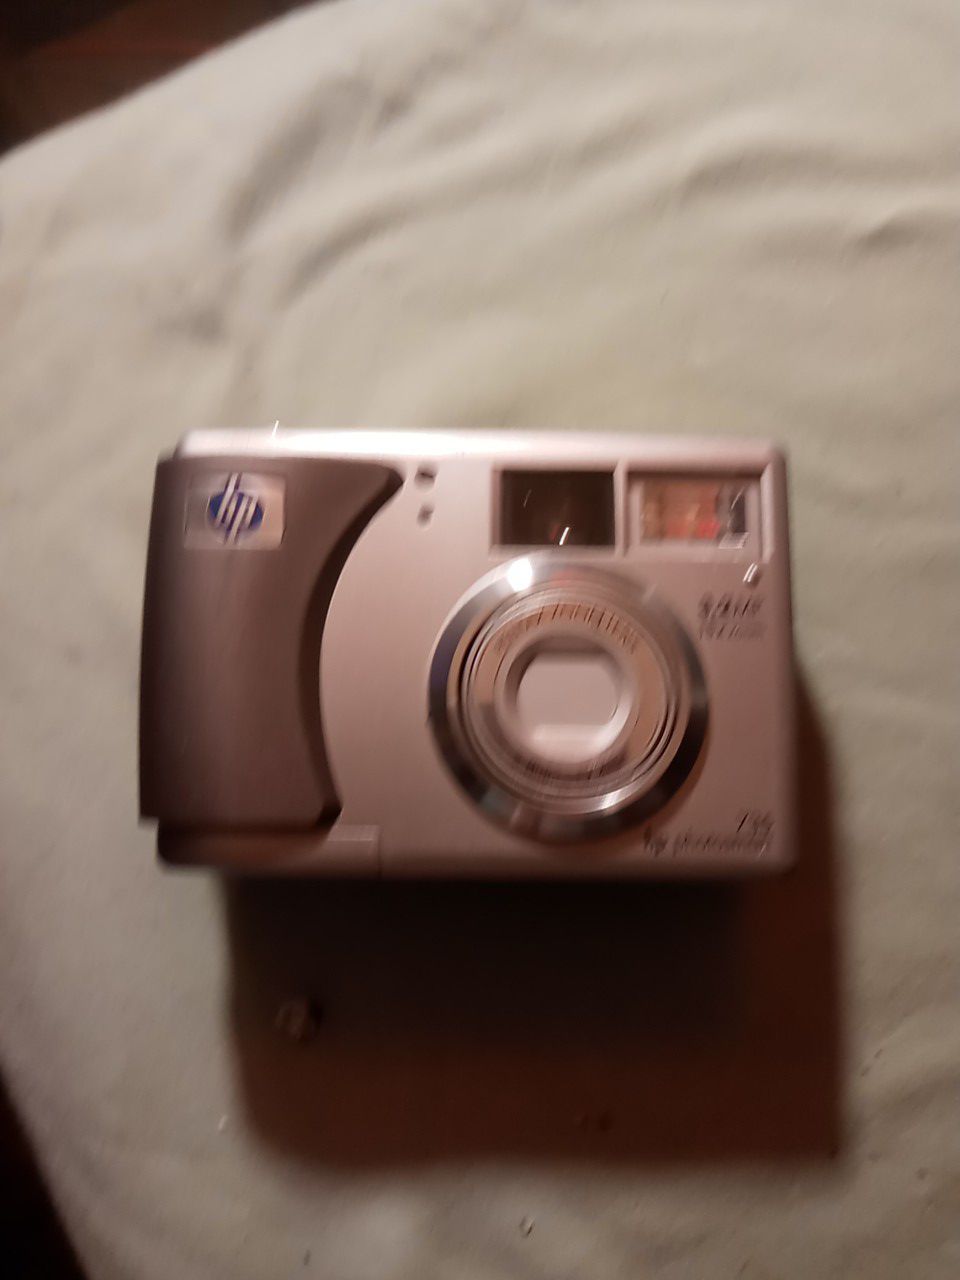 Hewlett Packard HP Photosmart 735 3.2MP Camera